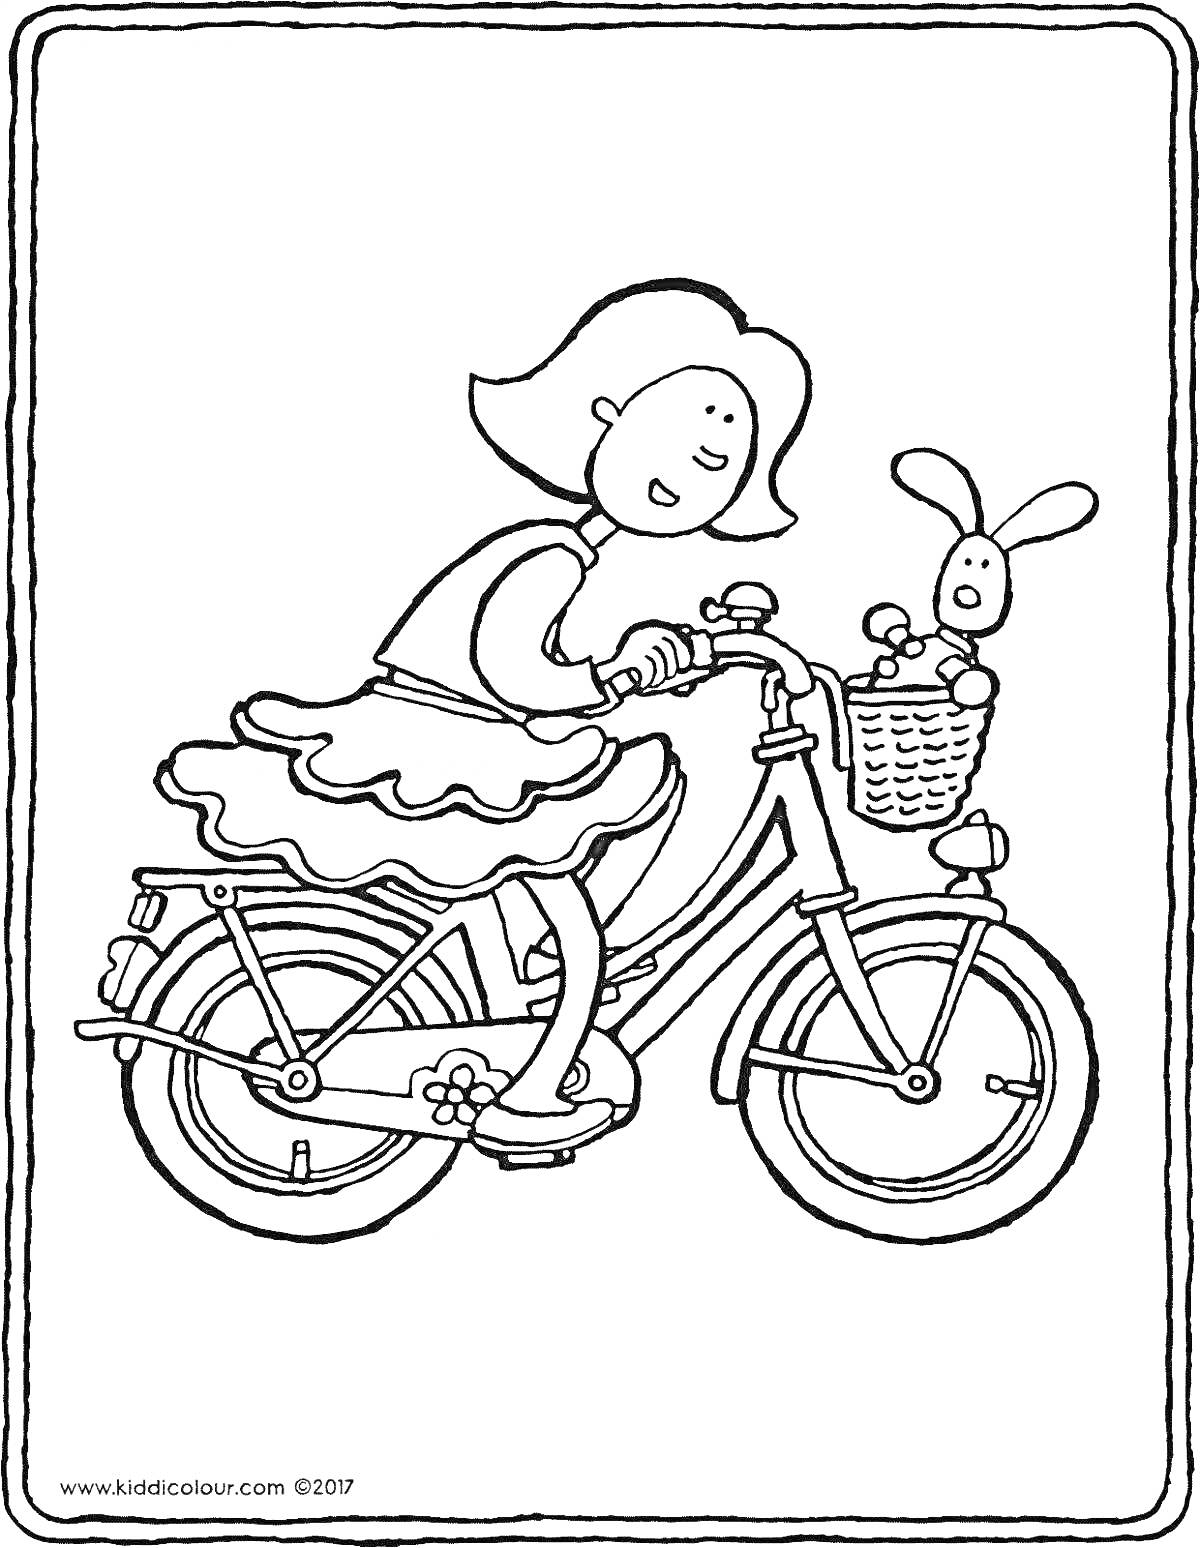 Раскраска Девочка на велосипеде с игрушкой в корзине